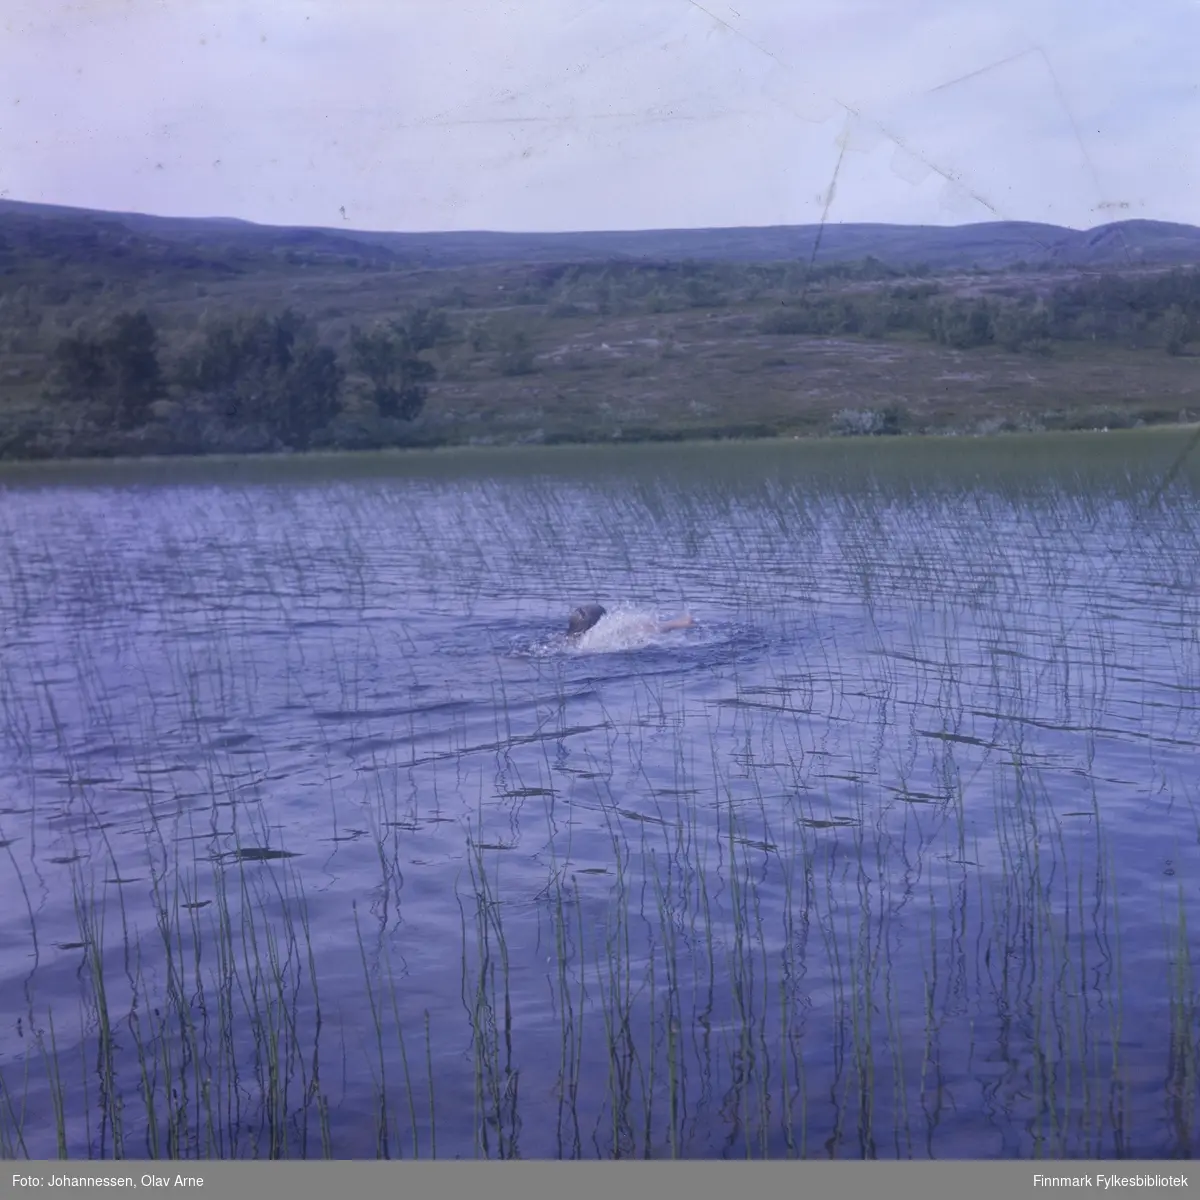 Foto av gutt som svømmer i vann, omringet av bjørkeskog. Antagelig i Finnmark 

Foto trolig tatt på 1960/70-tallet